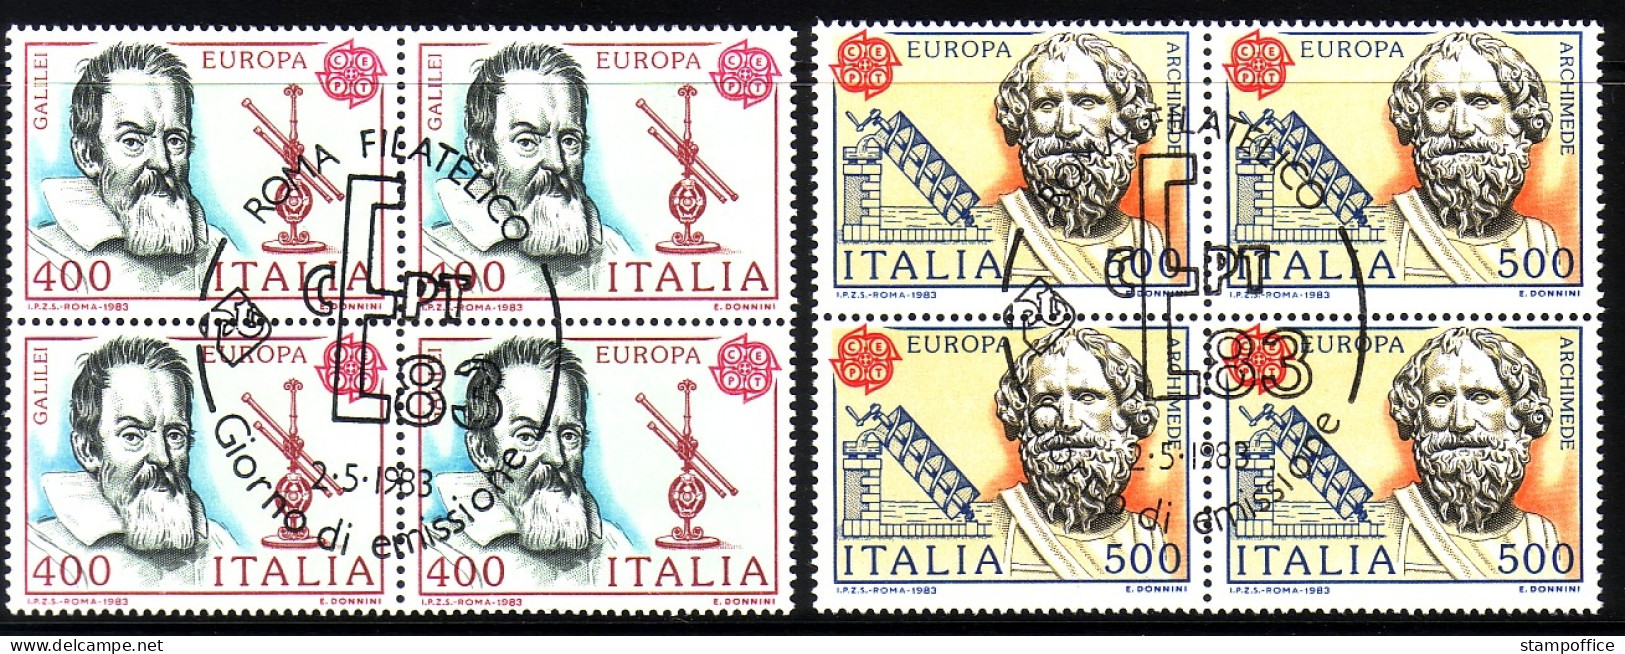 ITALIEN MI-NR. 1842-1843 O 4er BLOCK EUROPA CEPT 1983 GROSSE WERKE GALILEI ARCHIMEDES - 1983